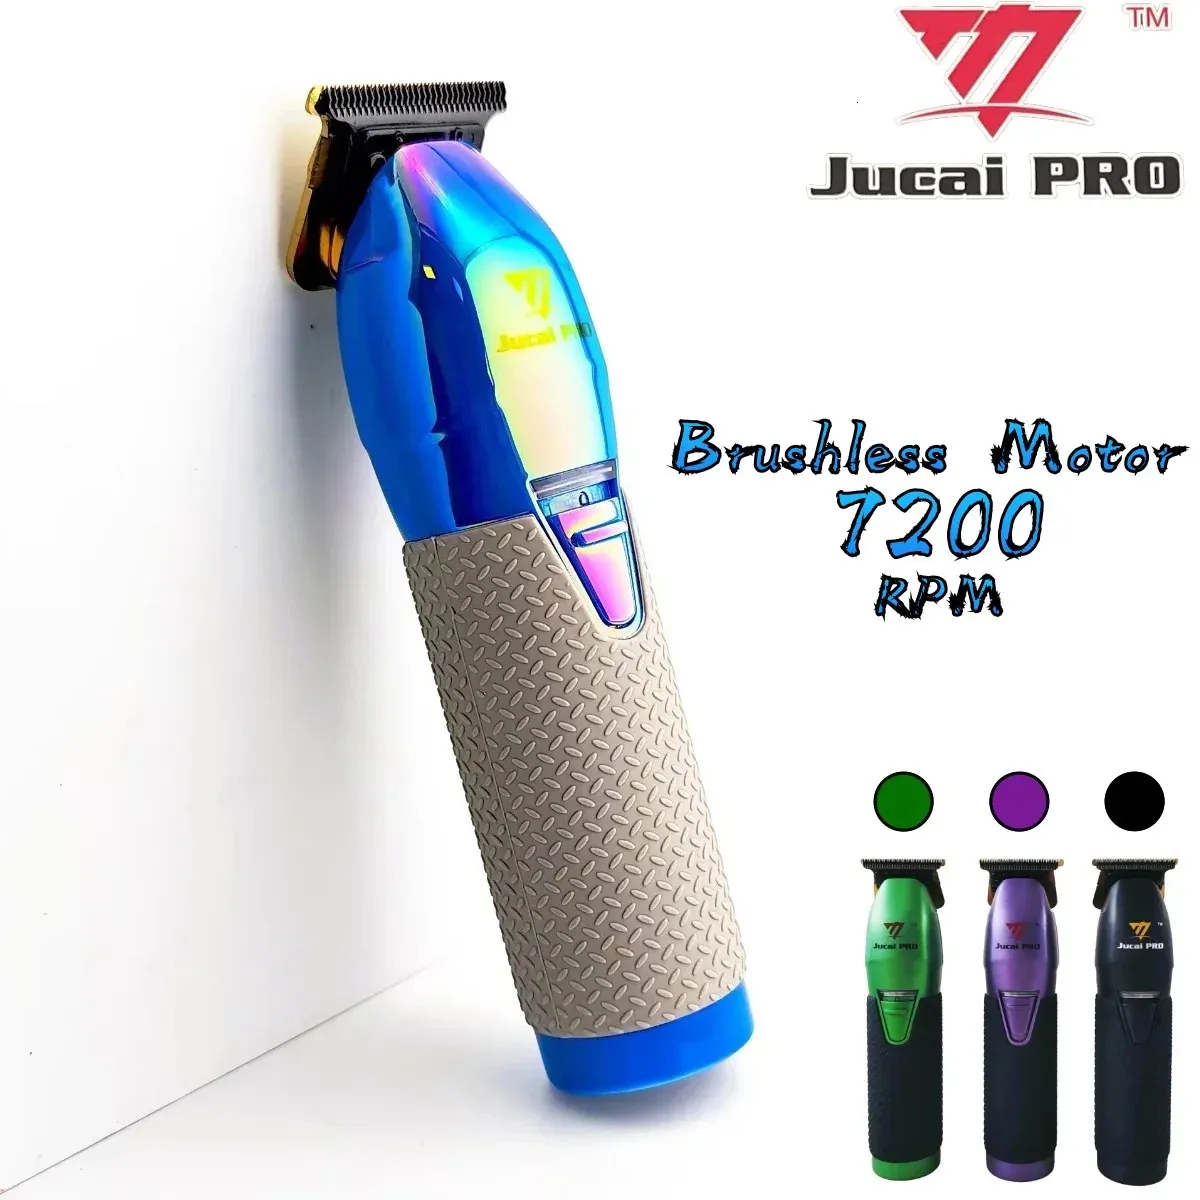 Jucai Pro Профессиональная электрическая машинка для стрижки волос Ультратонкая электрическая машинка для стрижки волос с нулевым шагом гравировки 7200 об/мин Беспроводная зарядка для парикмахерских240115